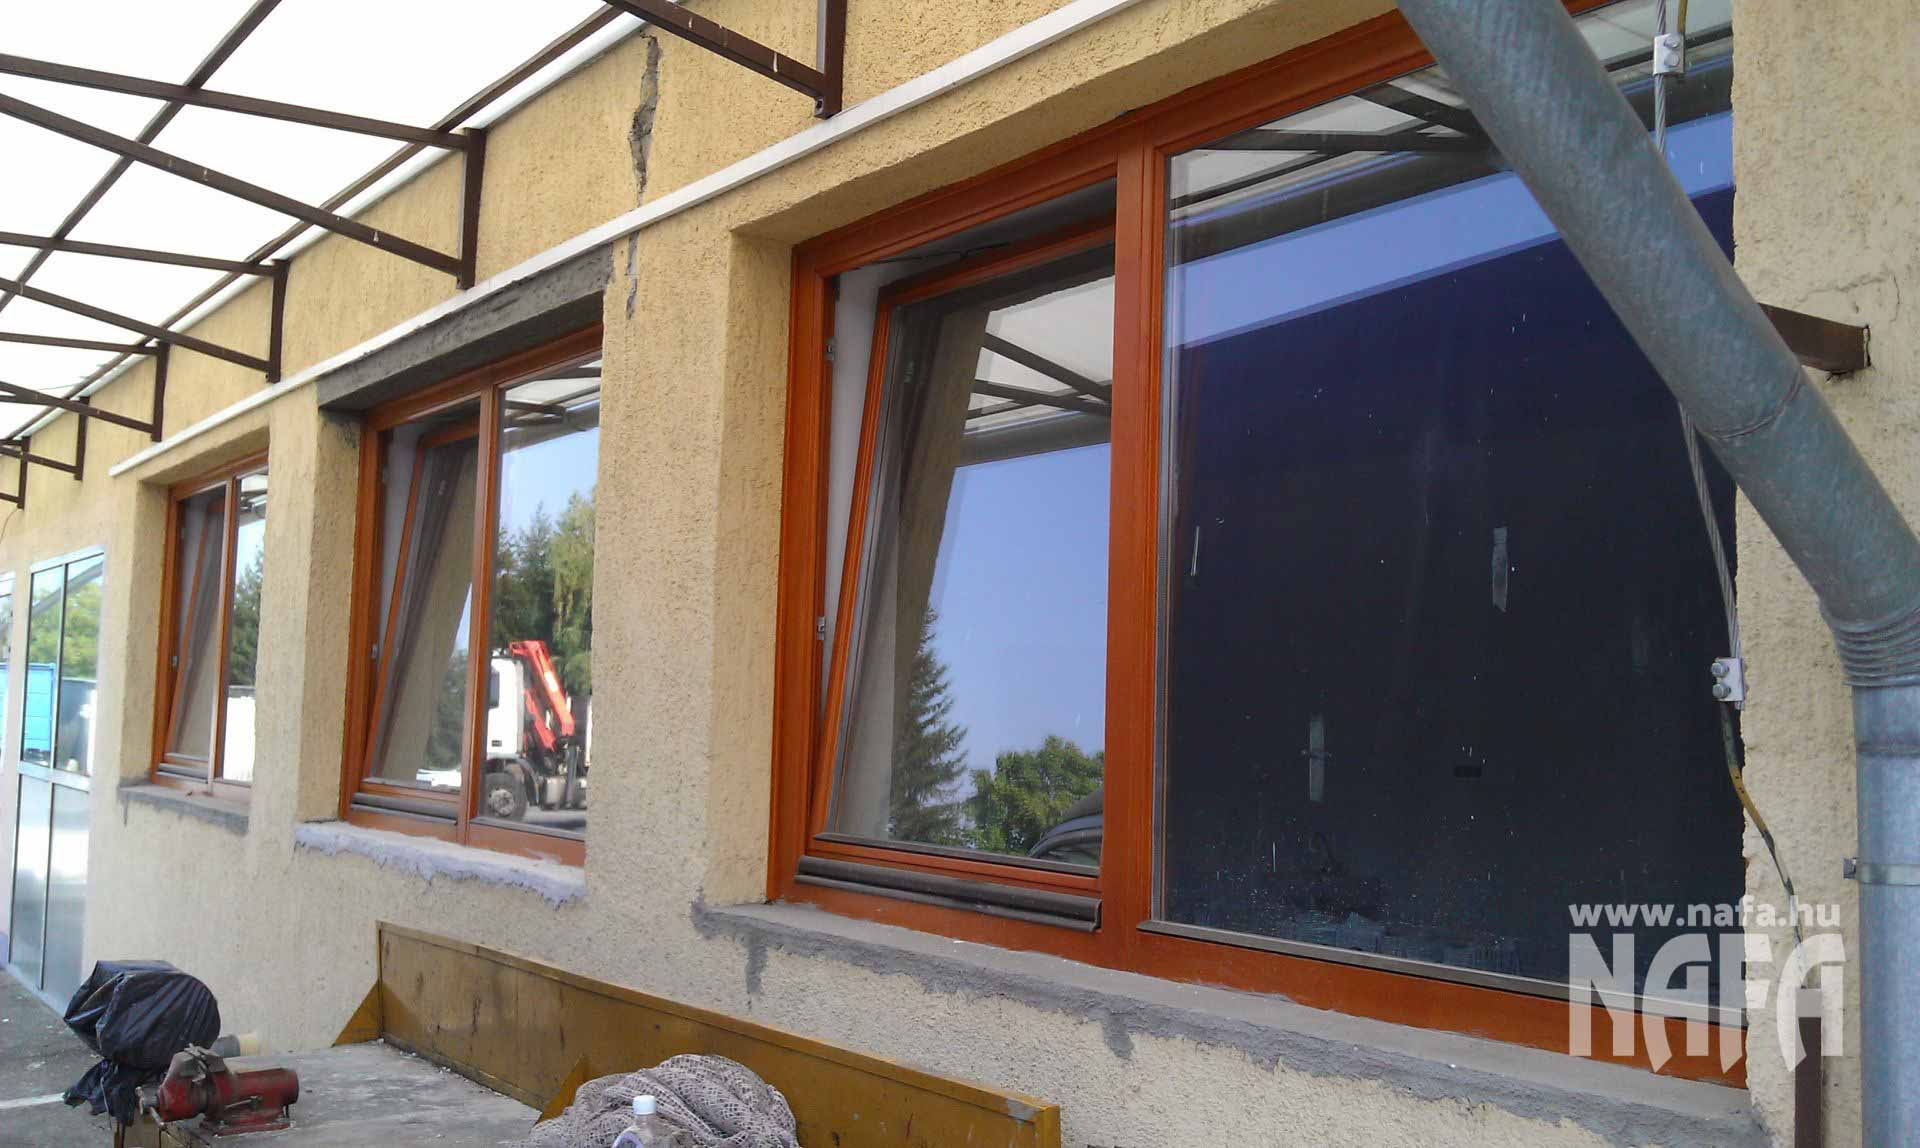 Fa nyílászárók, egyedi festett ablakok, Nagykanizsa Közintézmény